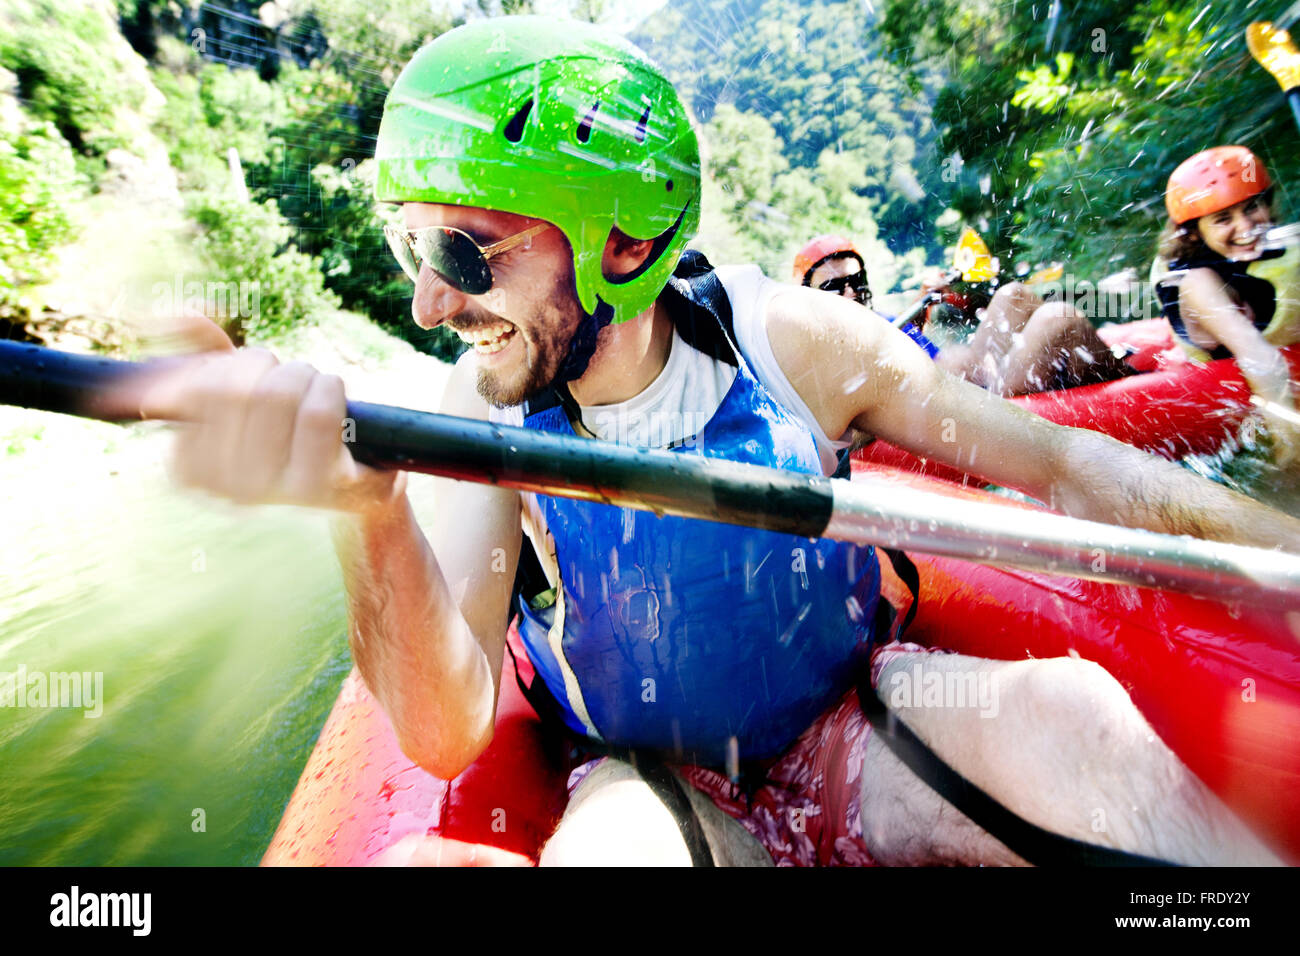 Les hommes excités s'amusant, riant dans la rafting canoë gonflable de l'eau d'être attaqué par une femme d'un autre bateau. Banque D'Images